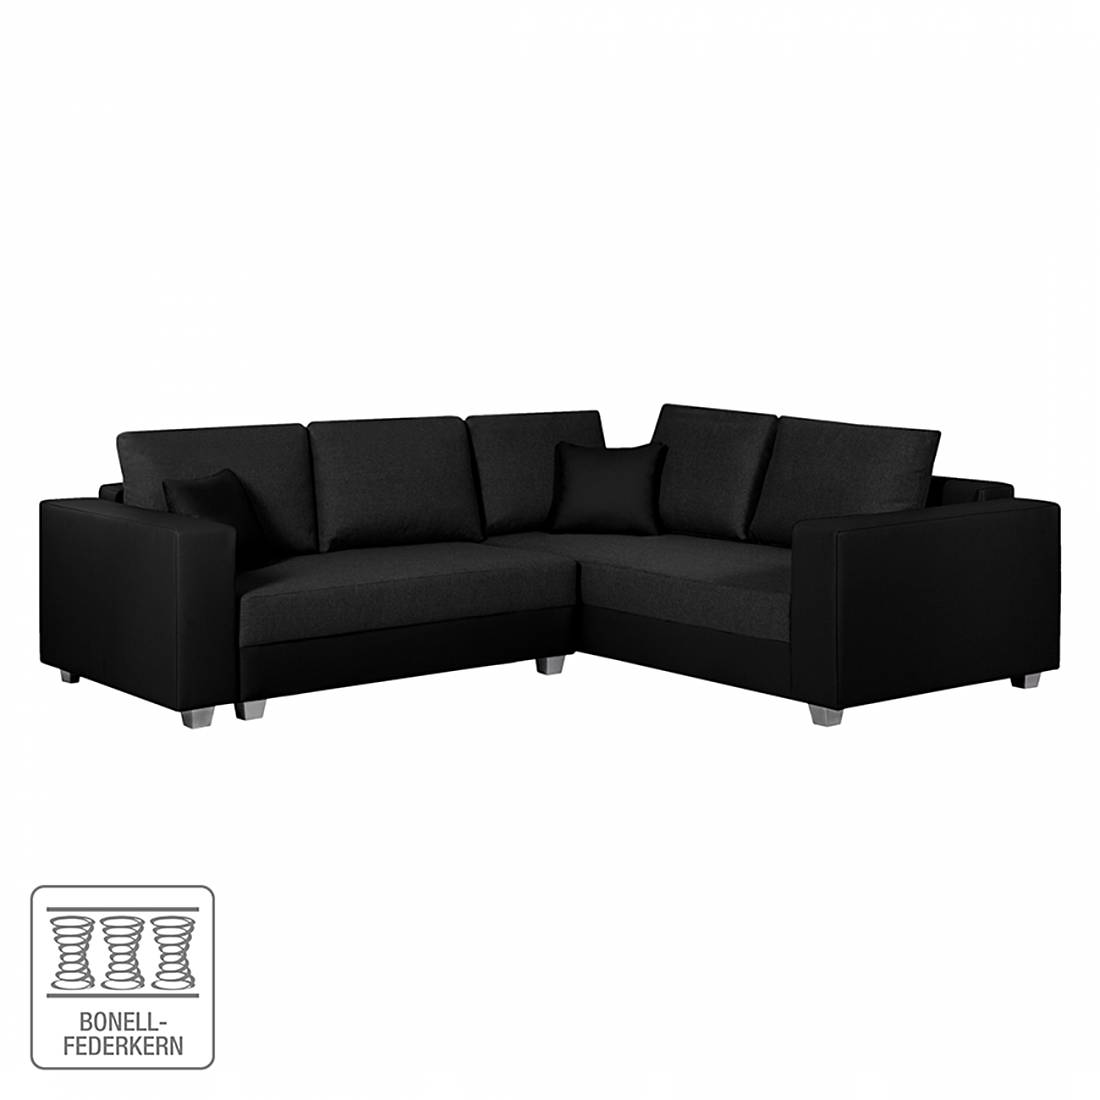 Sofa mit Schlaffunktion von roomscape bei Home24 kaufen | home24